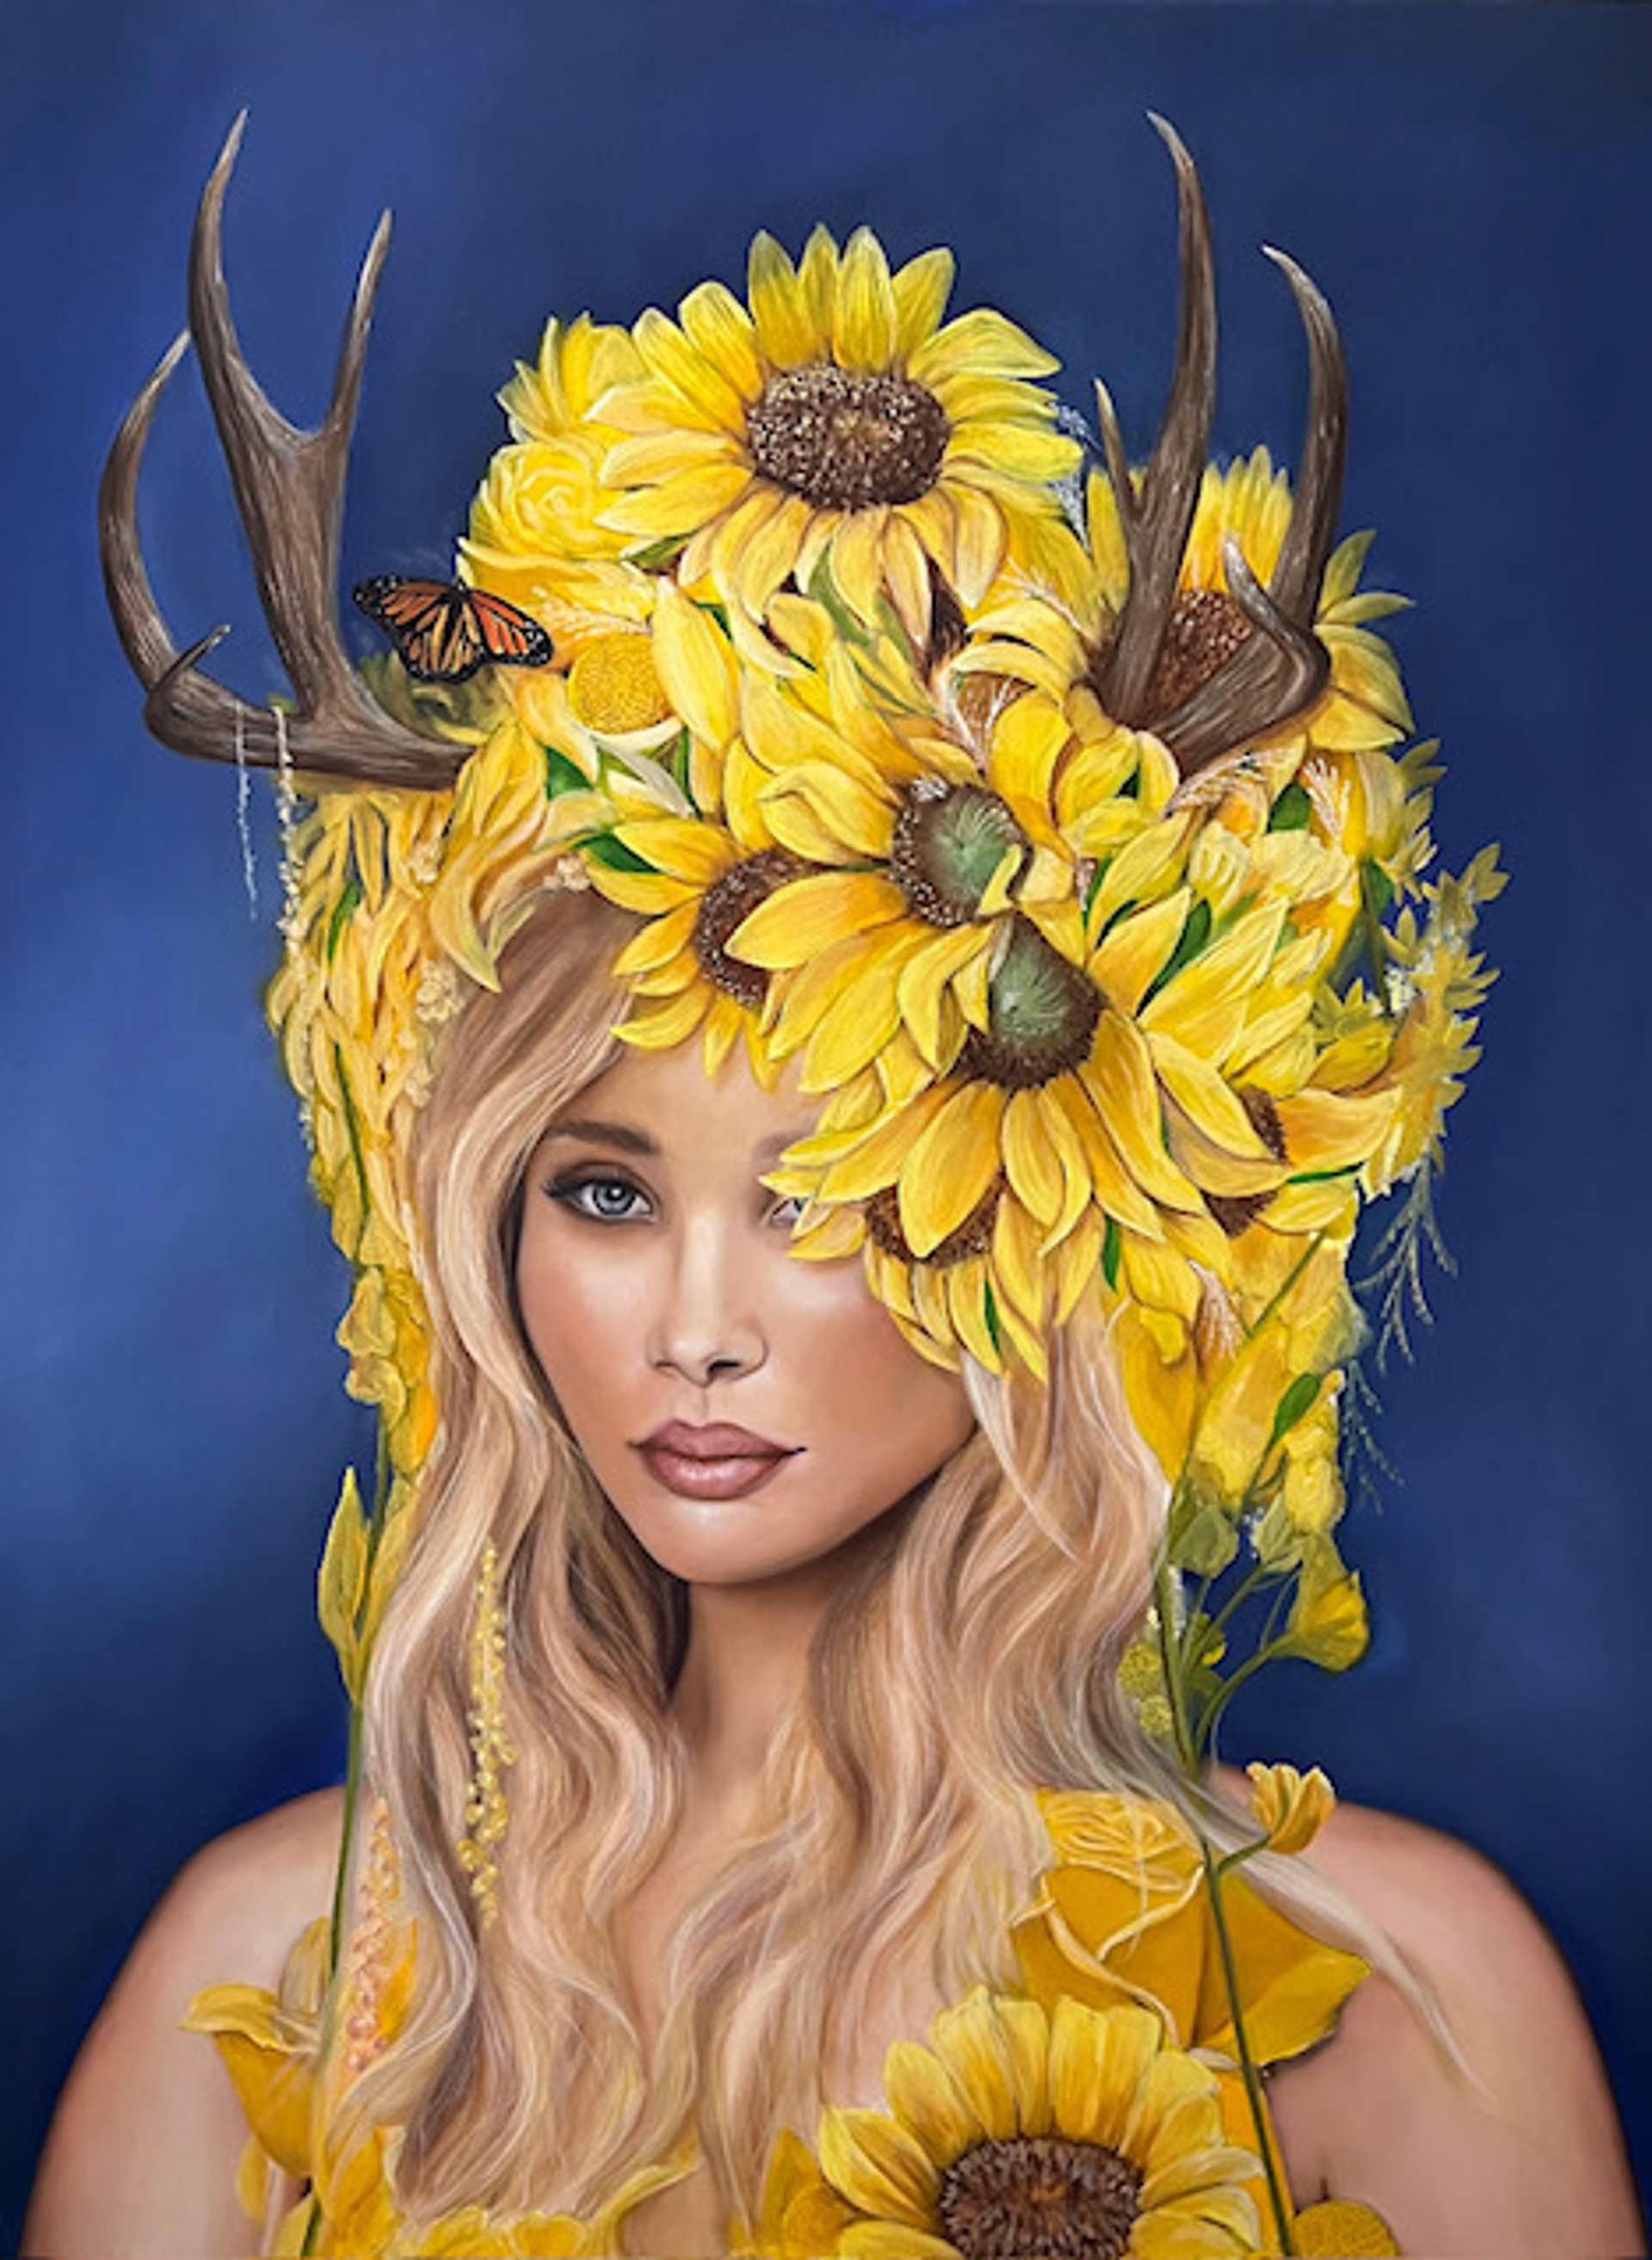 Sunflower Wild Child by Kai Lava